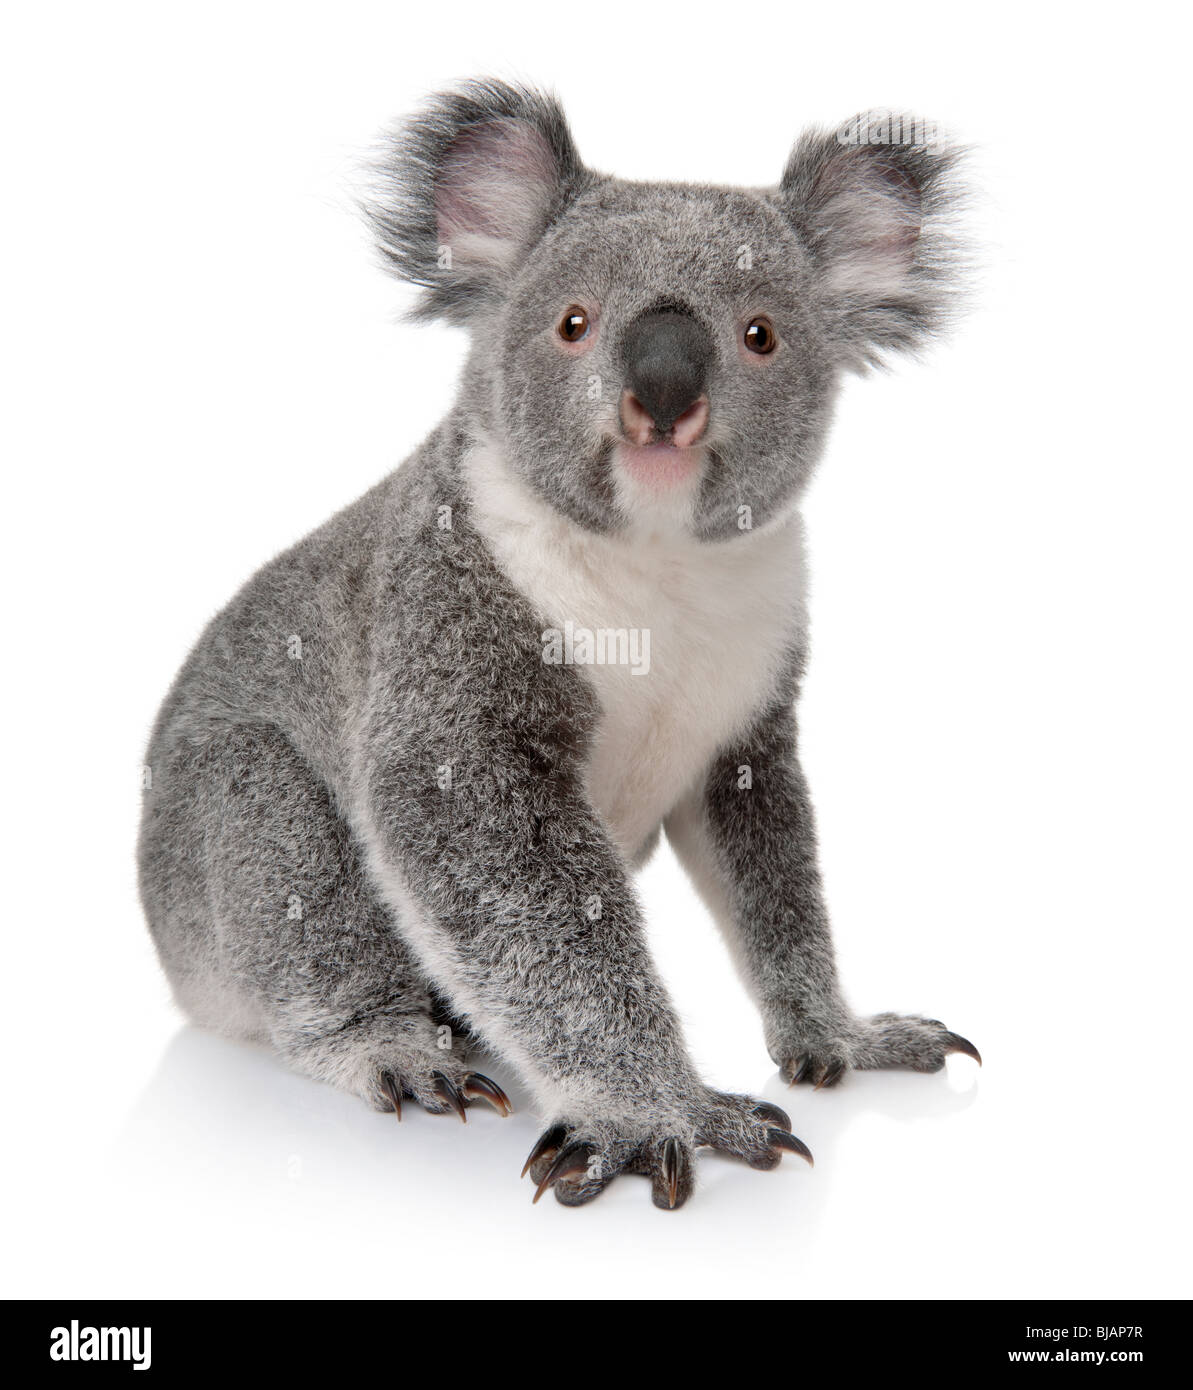 Giovani koala, Phascolarctos cinereus, quattordici mesi, seduto di fronte a uno sfondo bianco Foto Stock